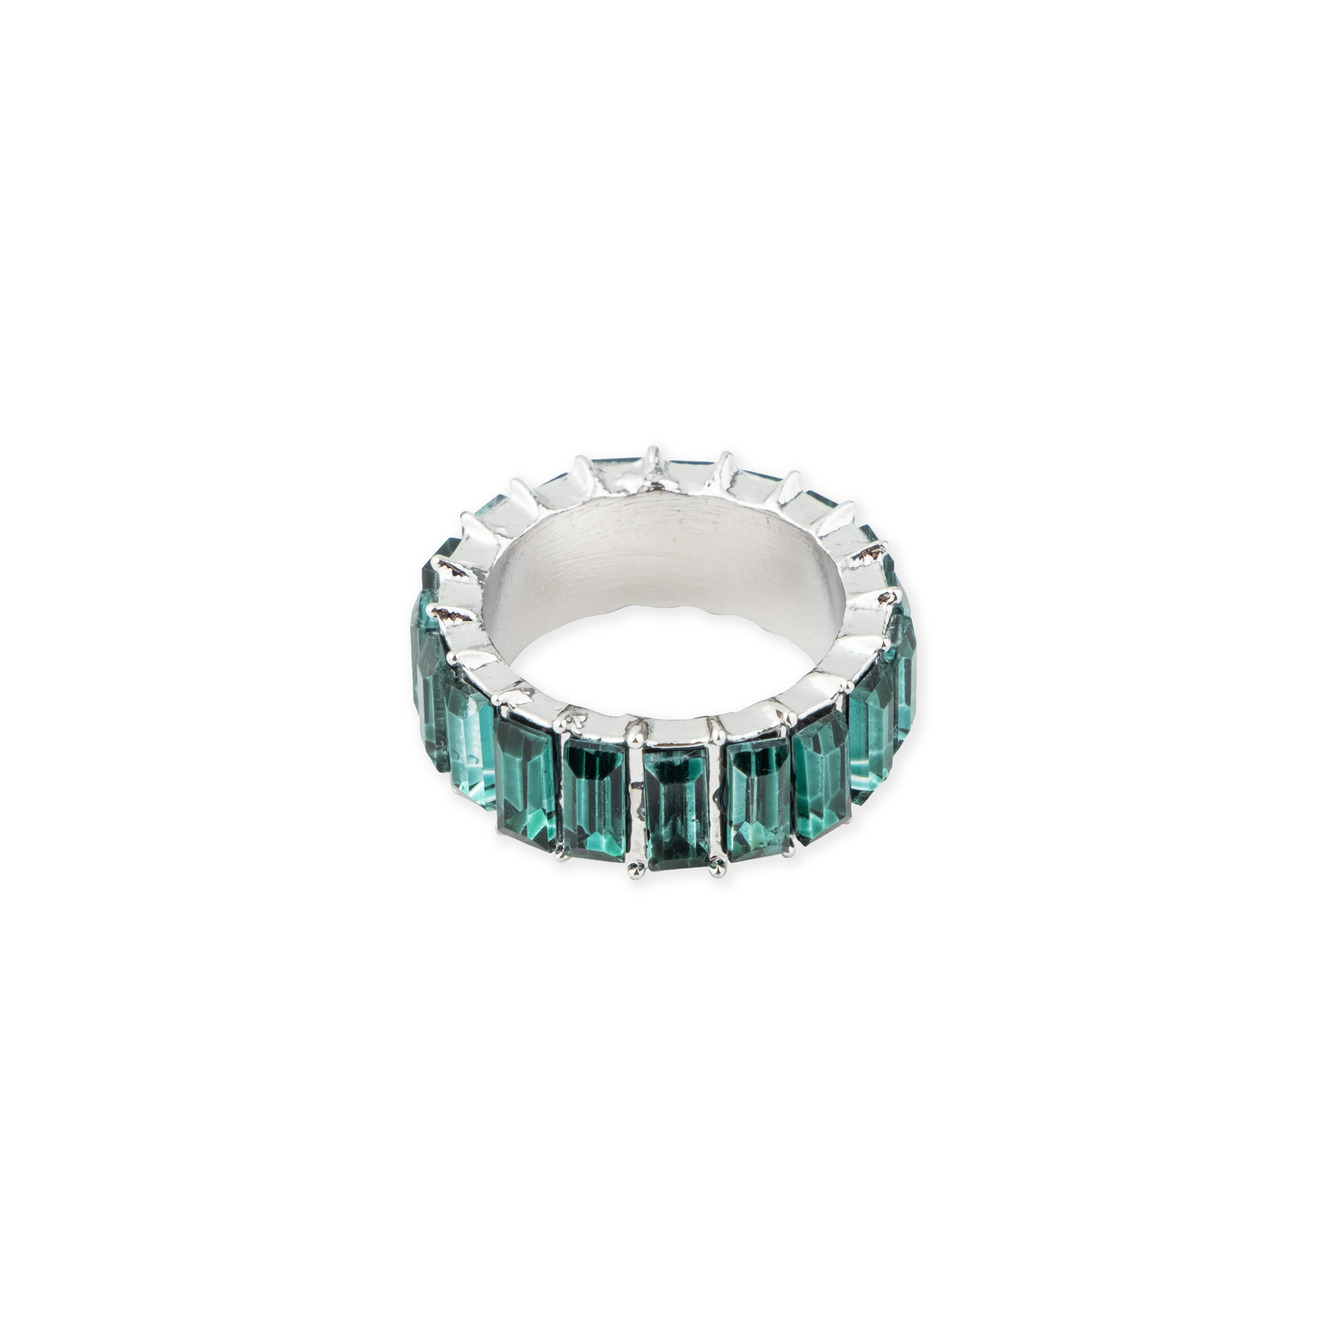 Herald Percy Серебристое кольцо с зелеными кристаллами herald percy золотистый кафф с зелеными кристаллами